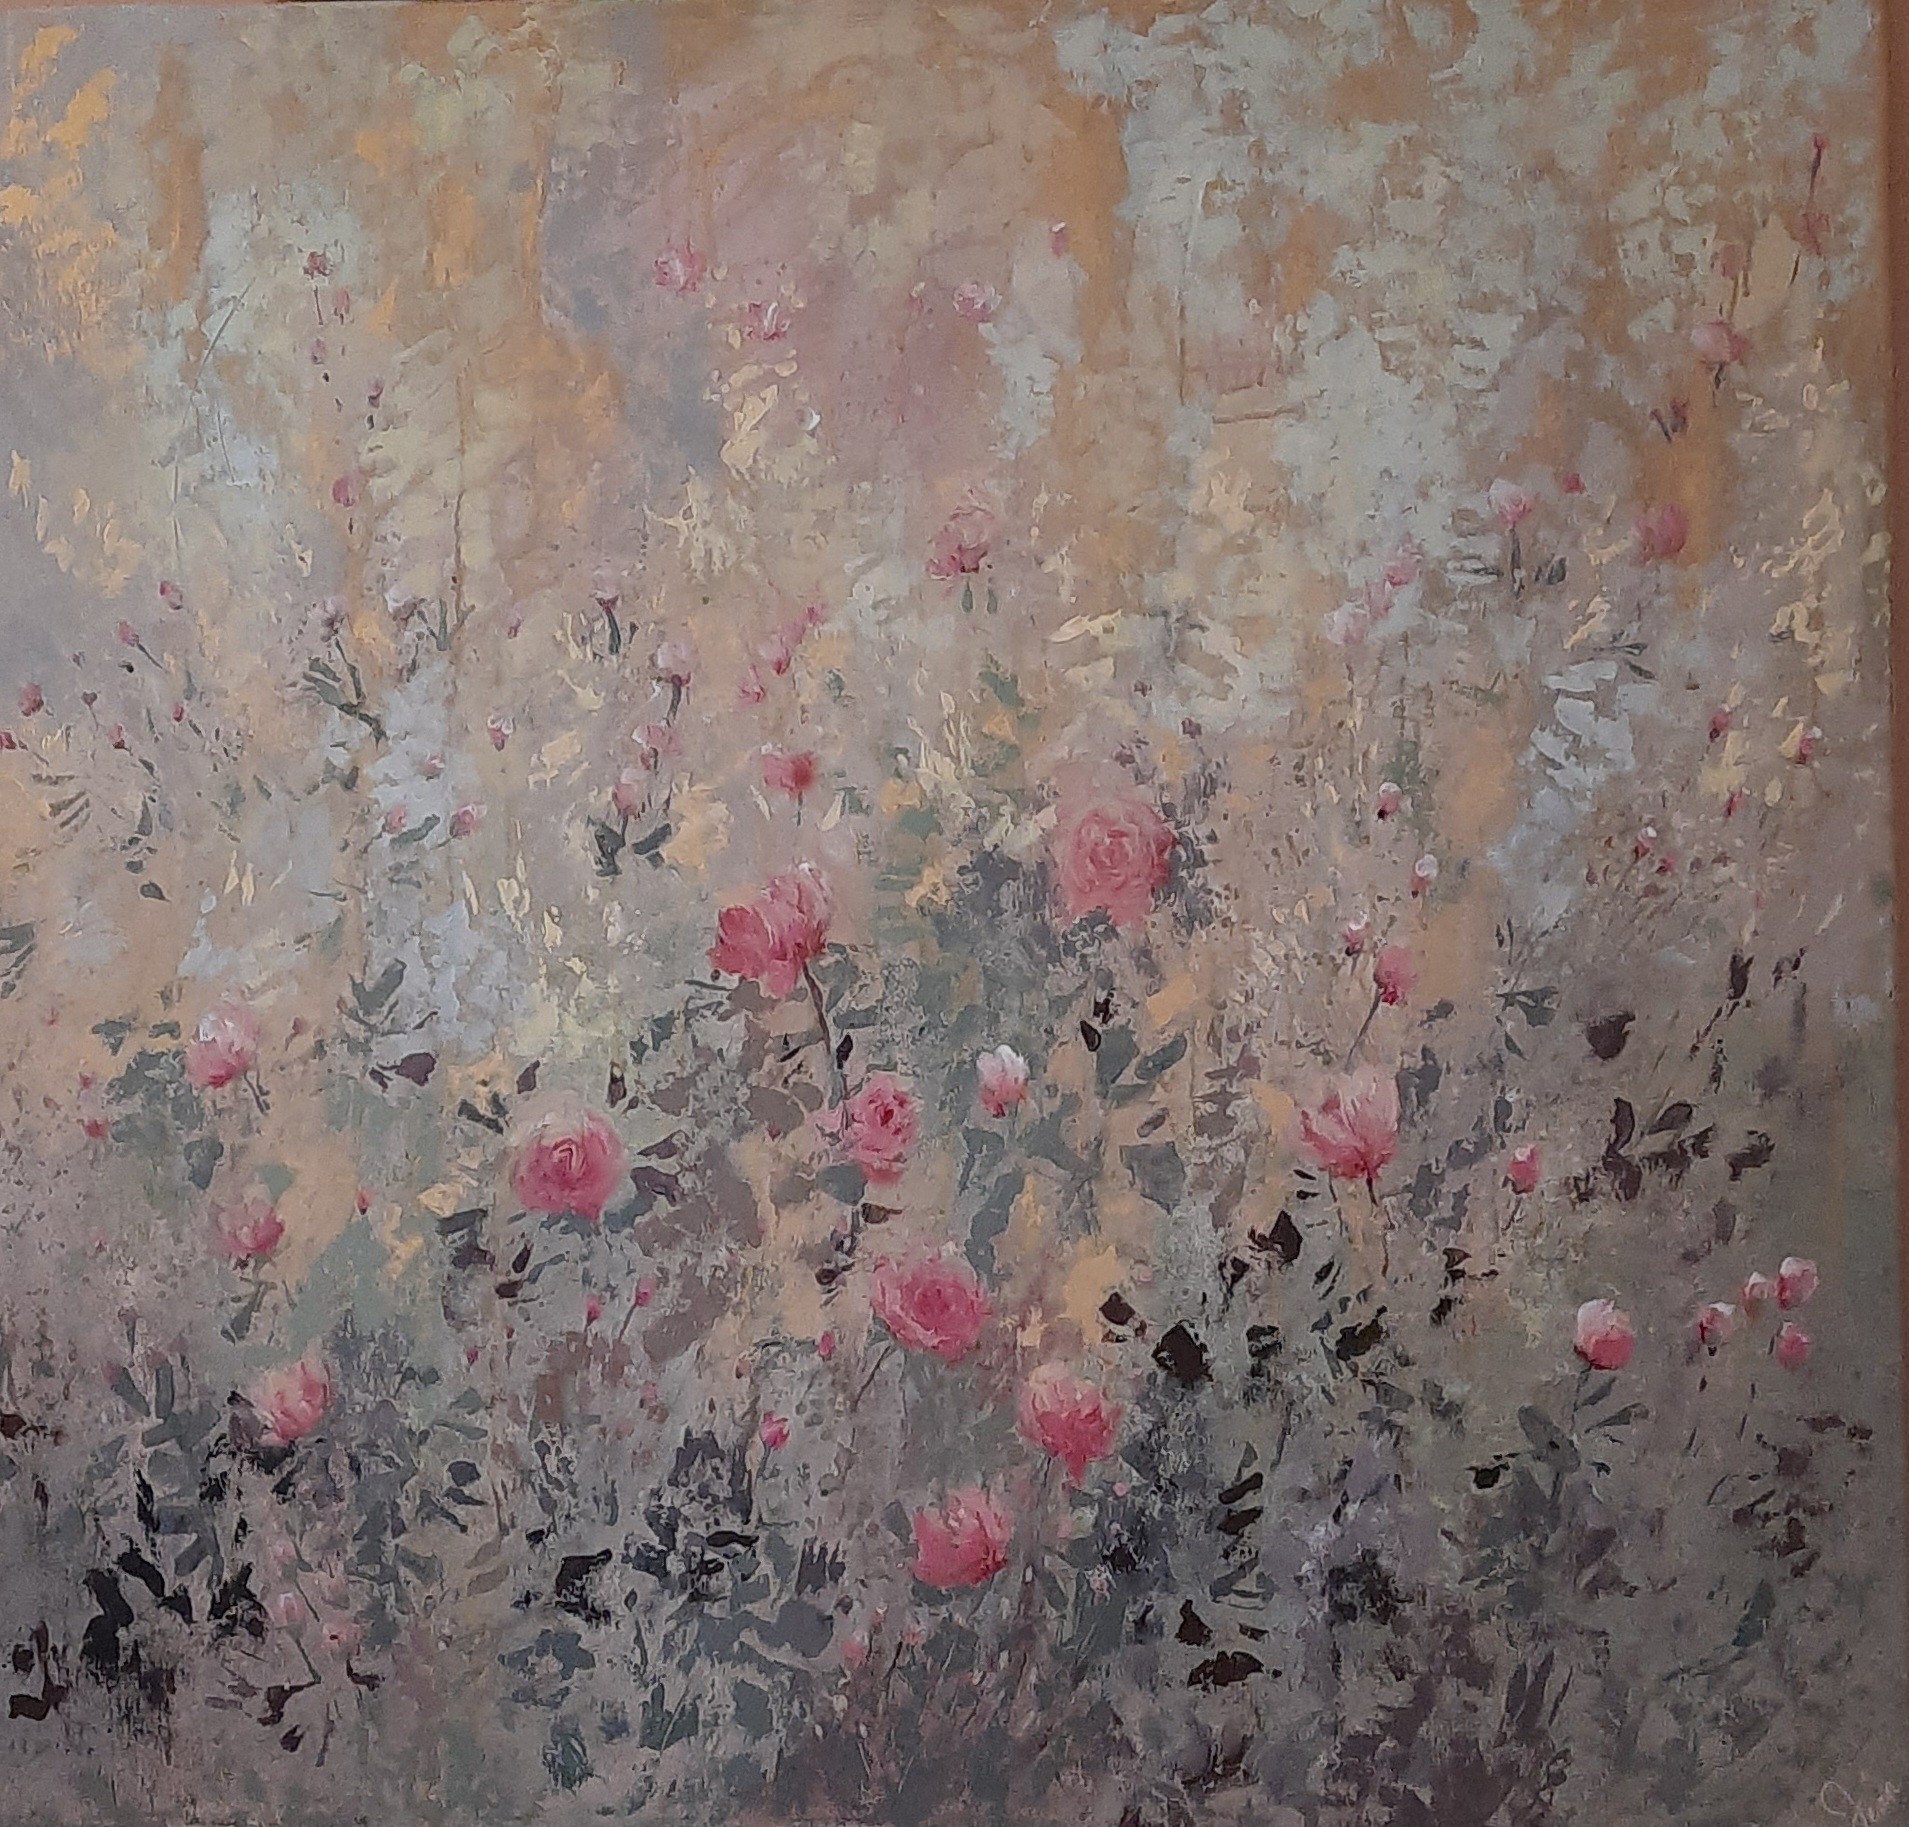 Rustic roses series by Jean wijesekera